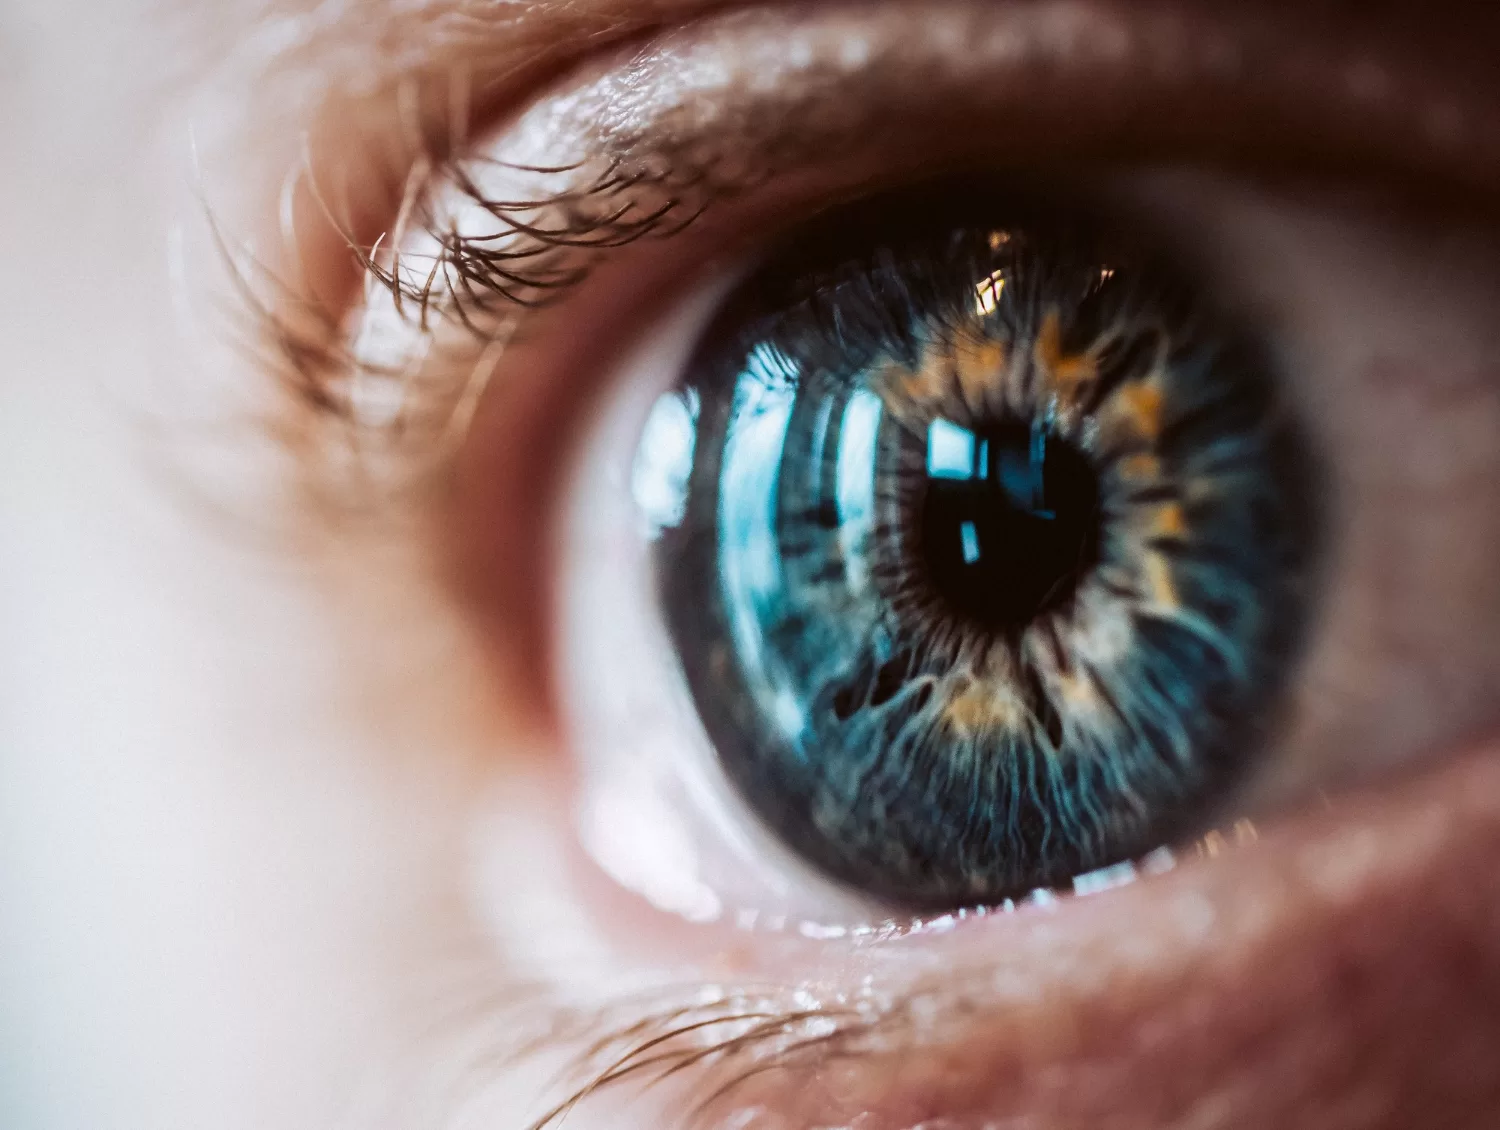 A técnica de laser pulsado desenvolvida pela USP pode oferecer uma nova esperança no tratamento do melanoma ocular, mostrando-se eficaz em testes preliminares.